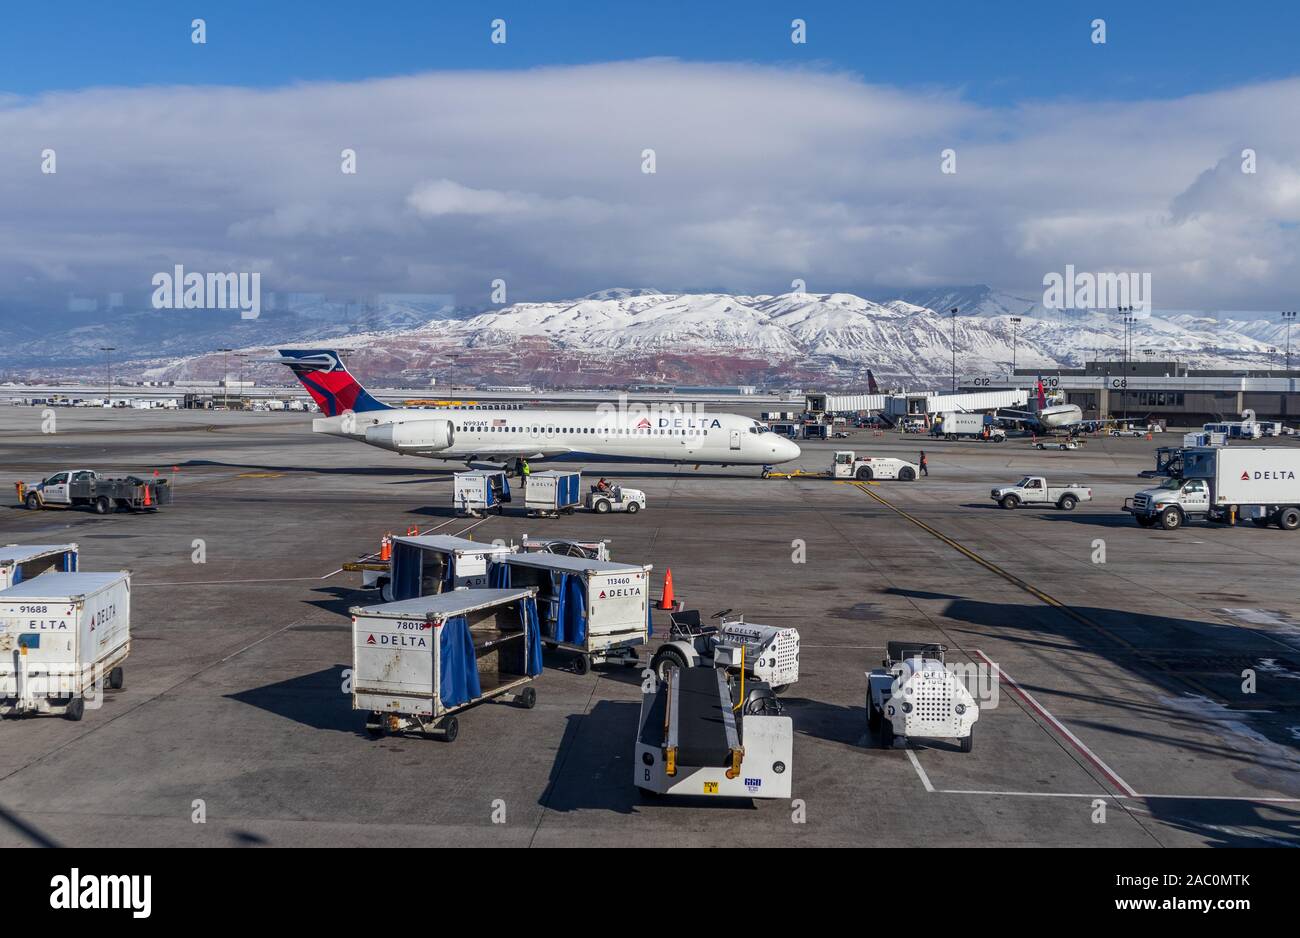 Velivoli Delta in rullaggio a Salt Lake City airport USA Utah, con gestori di terra sul piazzale con il bianco delle montagne innevate sullo sfondo Foto Stock